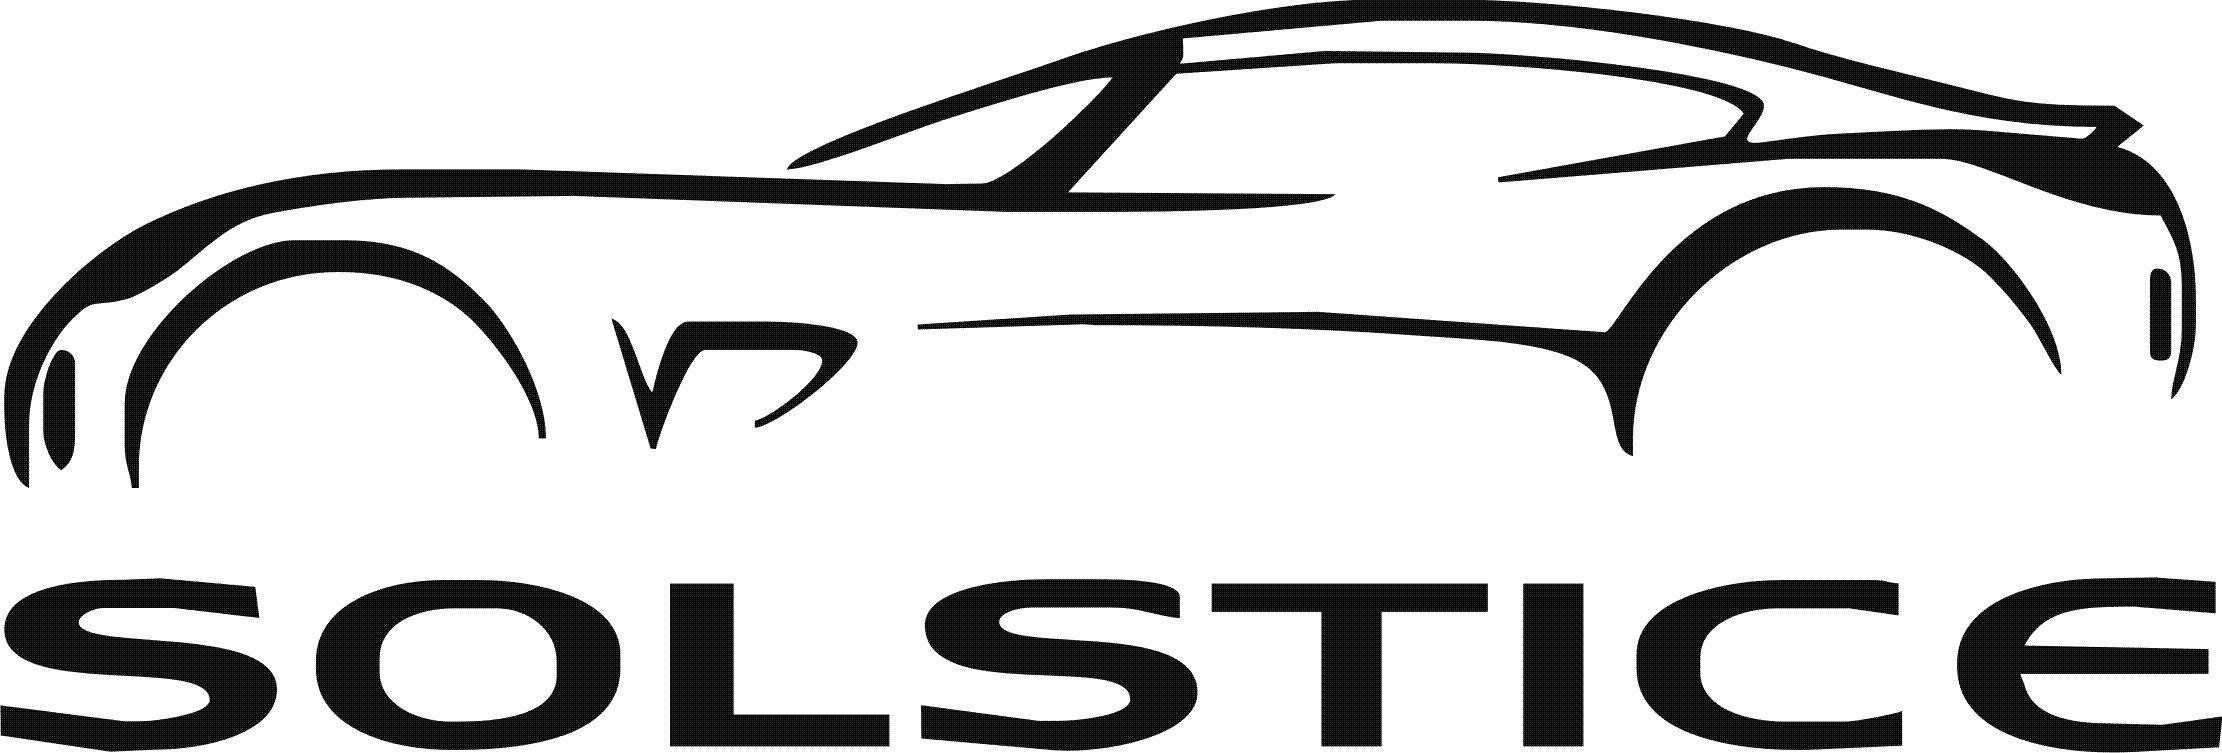 Car Outline Logo - Car Clipart Logo